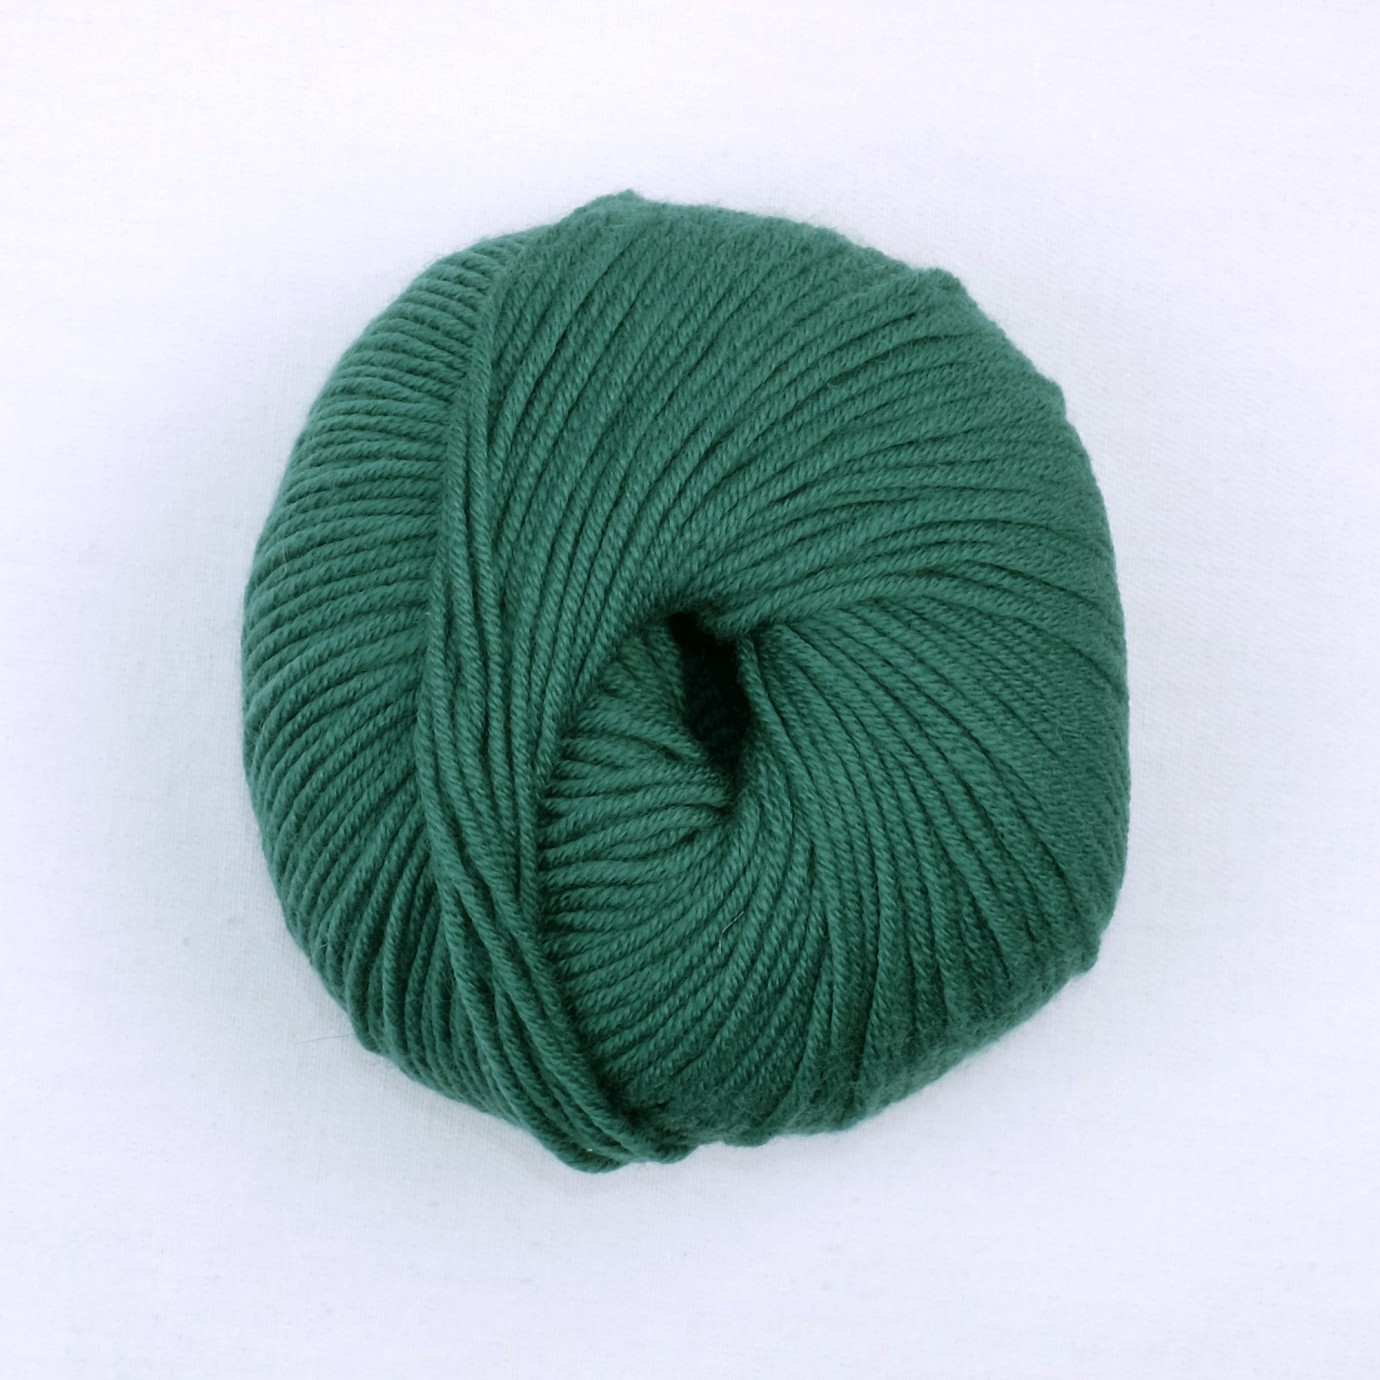 Pelote de laine mérinos vert cèdre - Au Fil de l'Herbe